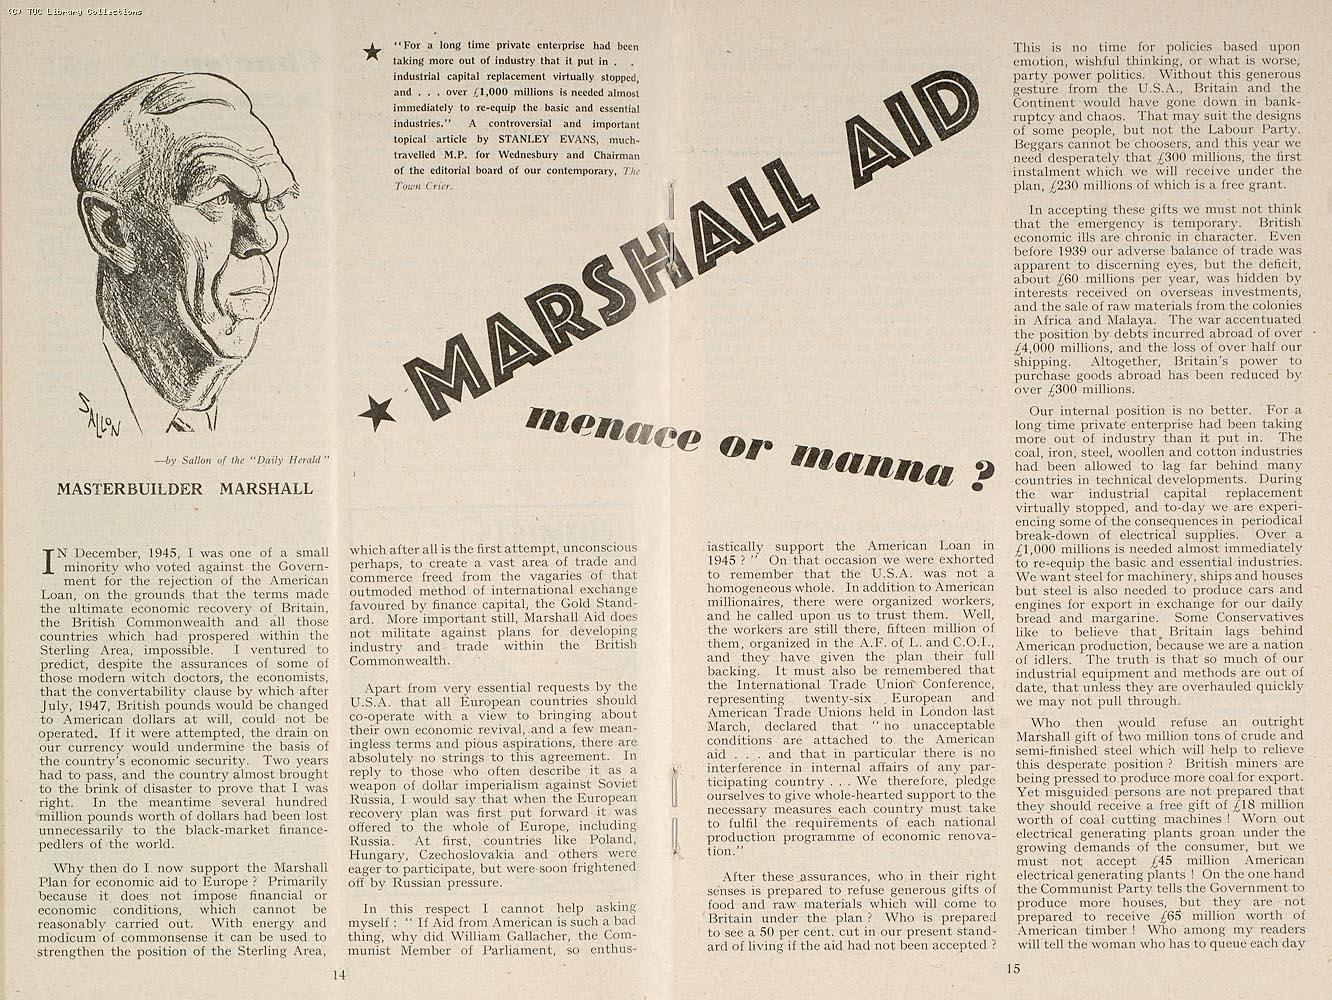 Marshall Aid